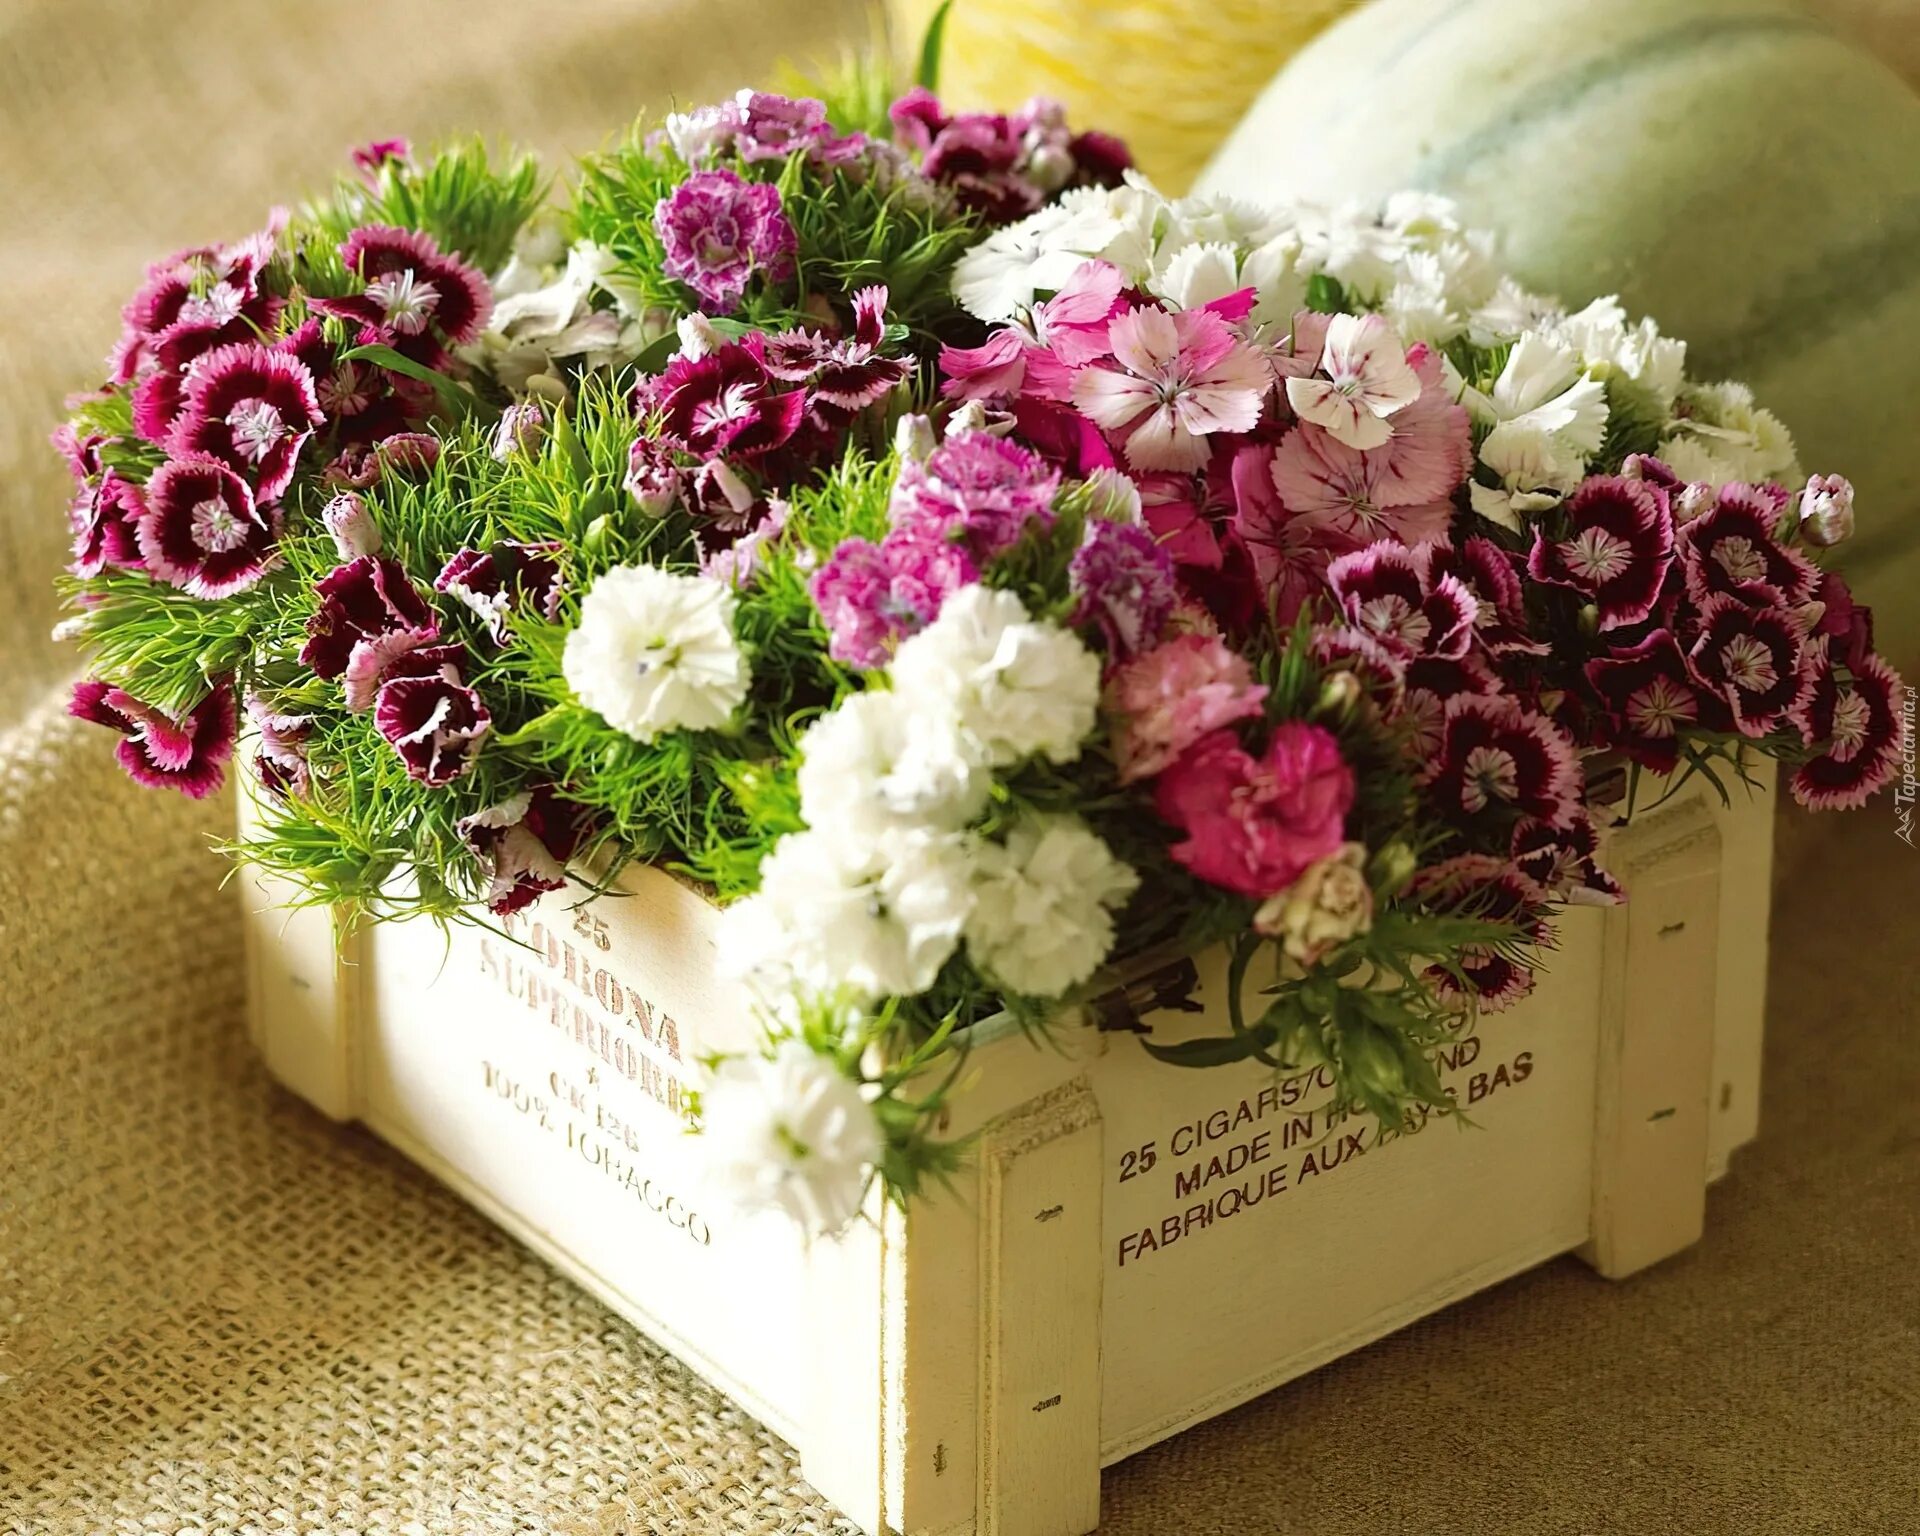 My flowers are beautiful. Диантус цветы. Ящик с цветами. Красивый букет цветов. Букеты в ящике из живых цветов.